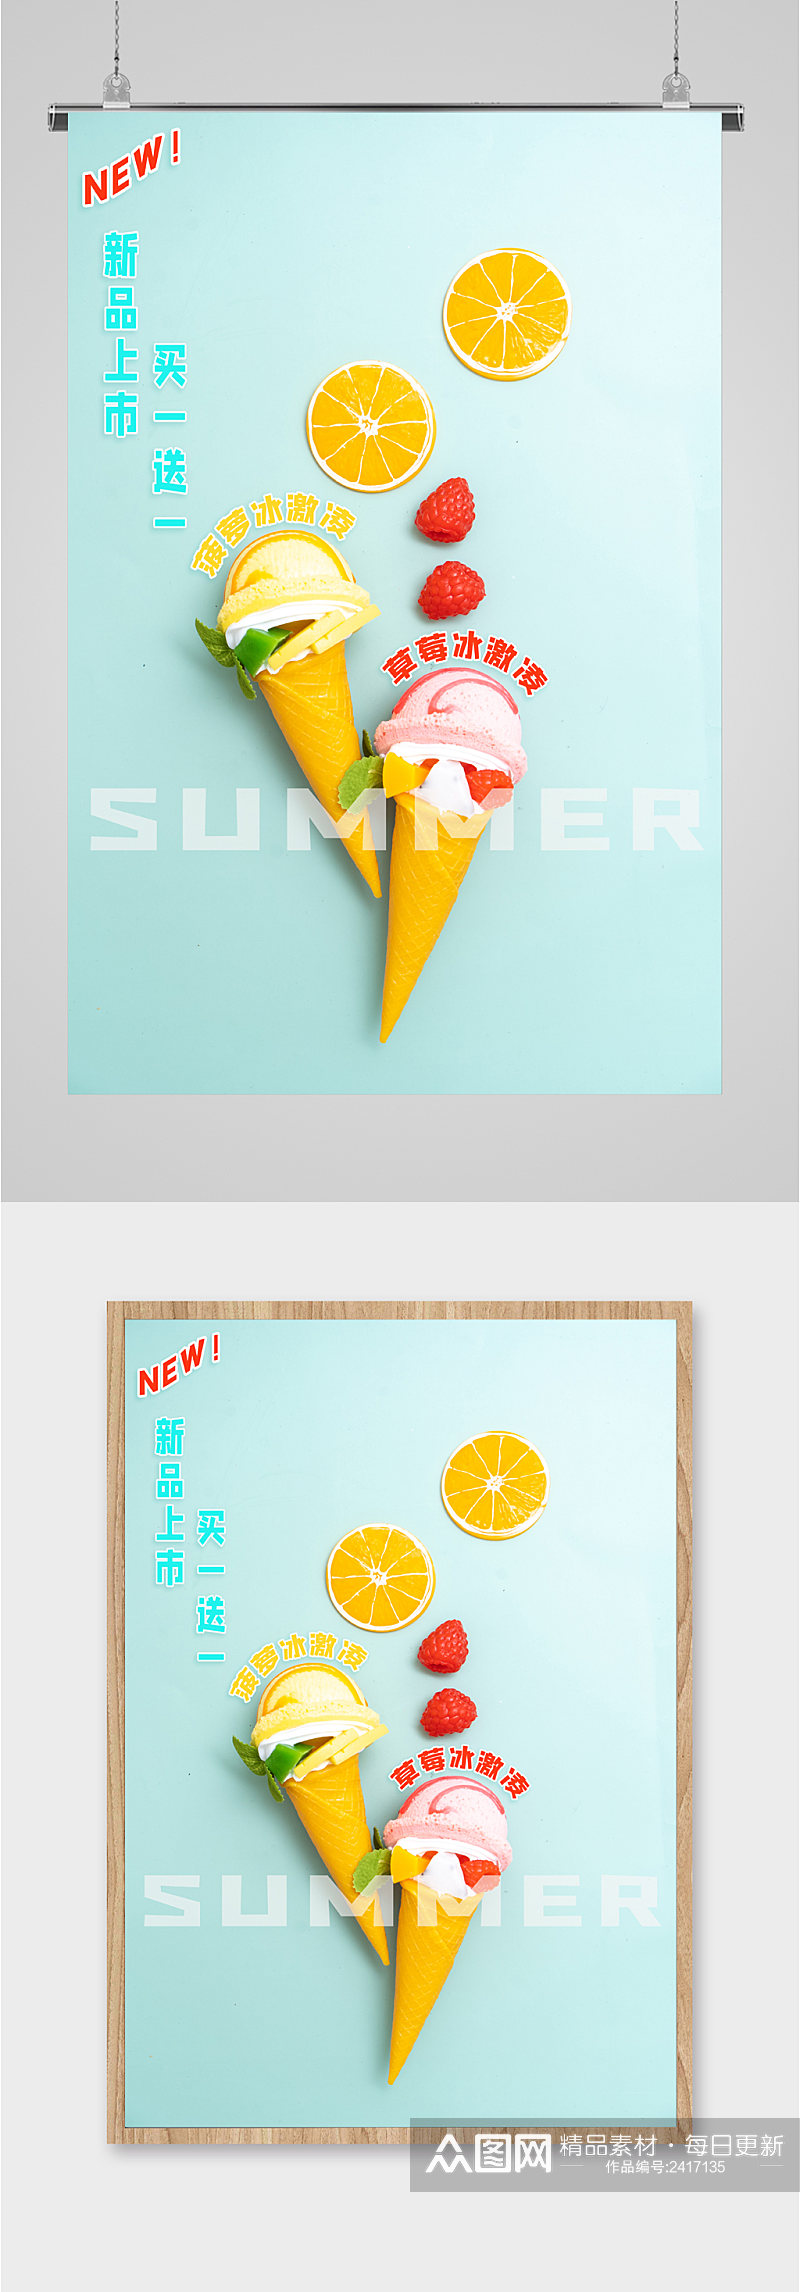 夏季冰激凌新品上市宣传海报素材